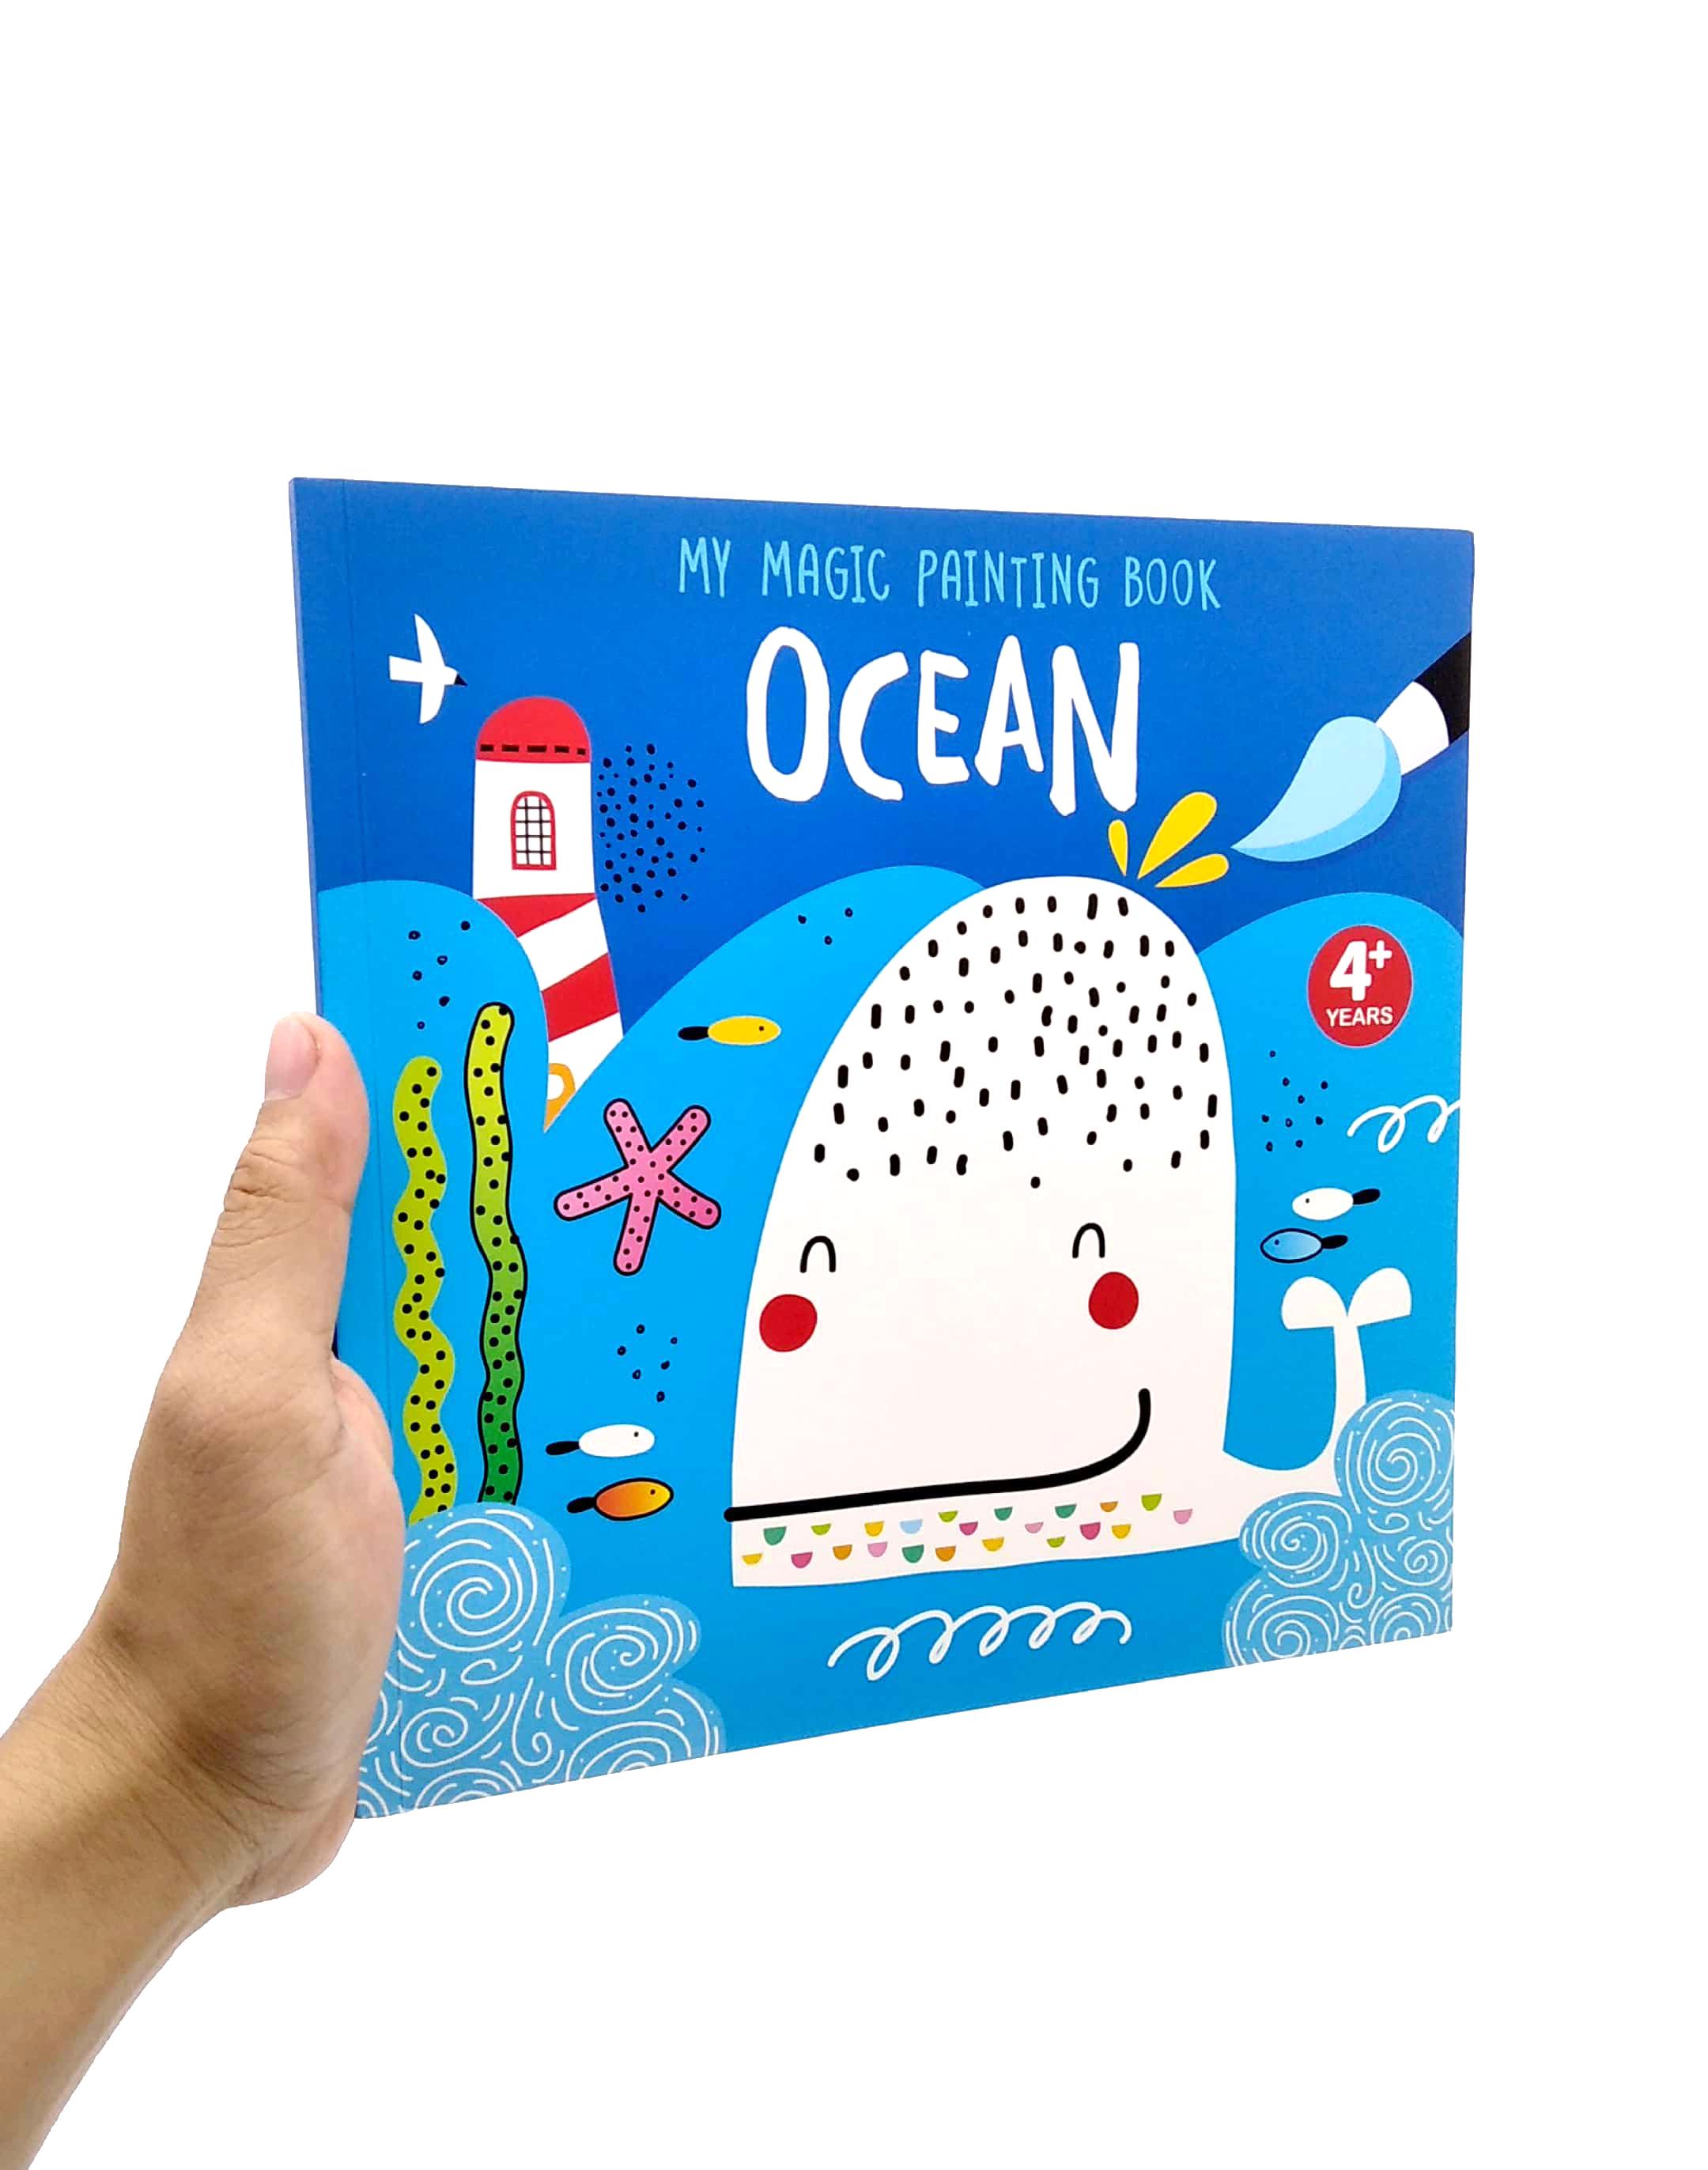 My Magic Painting Book: Ocean